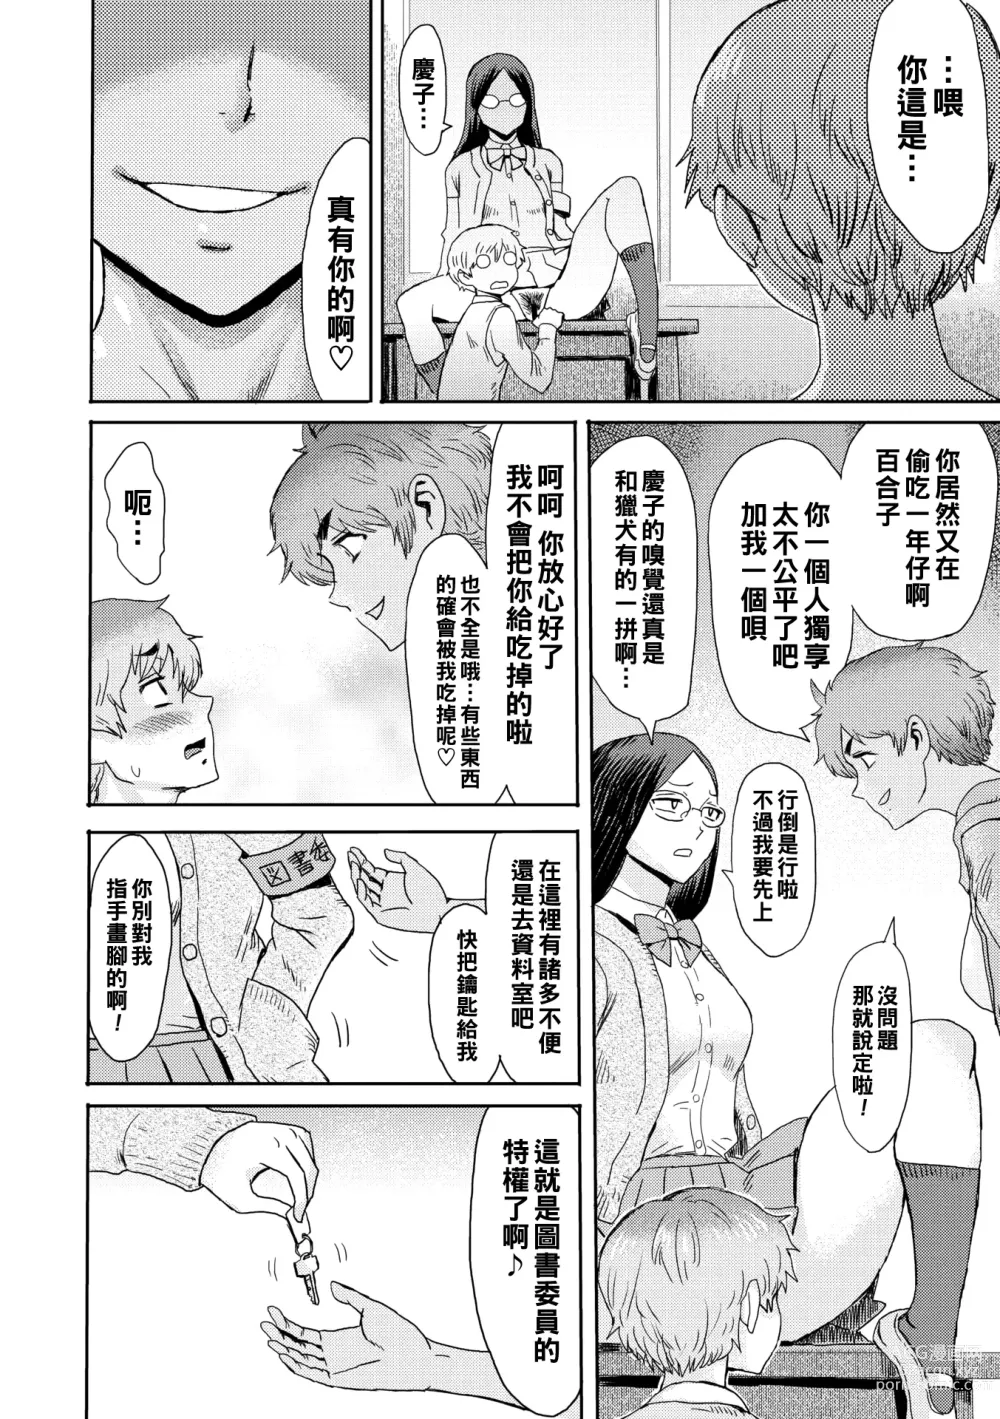 Page 8 of manga Danger Pair